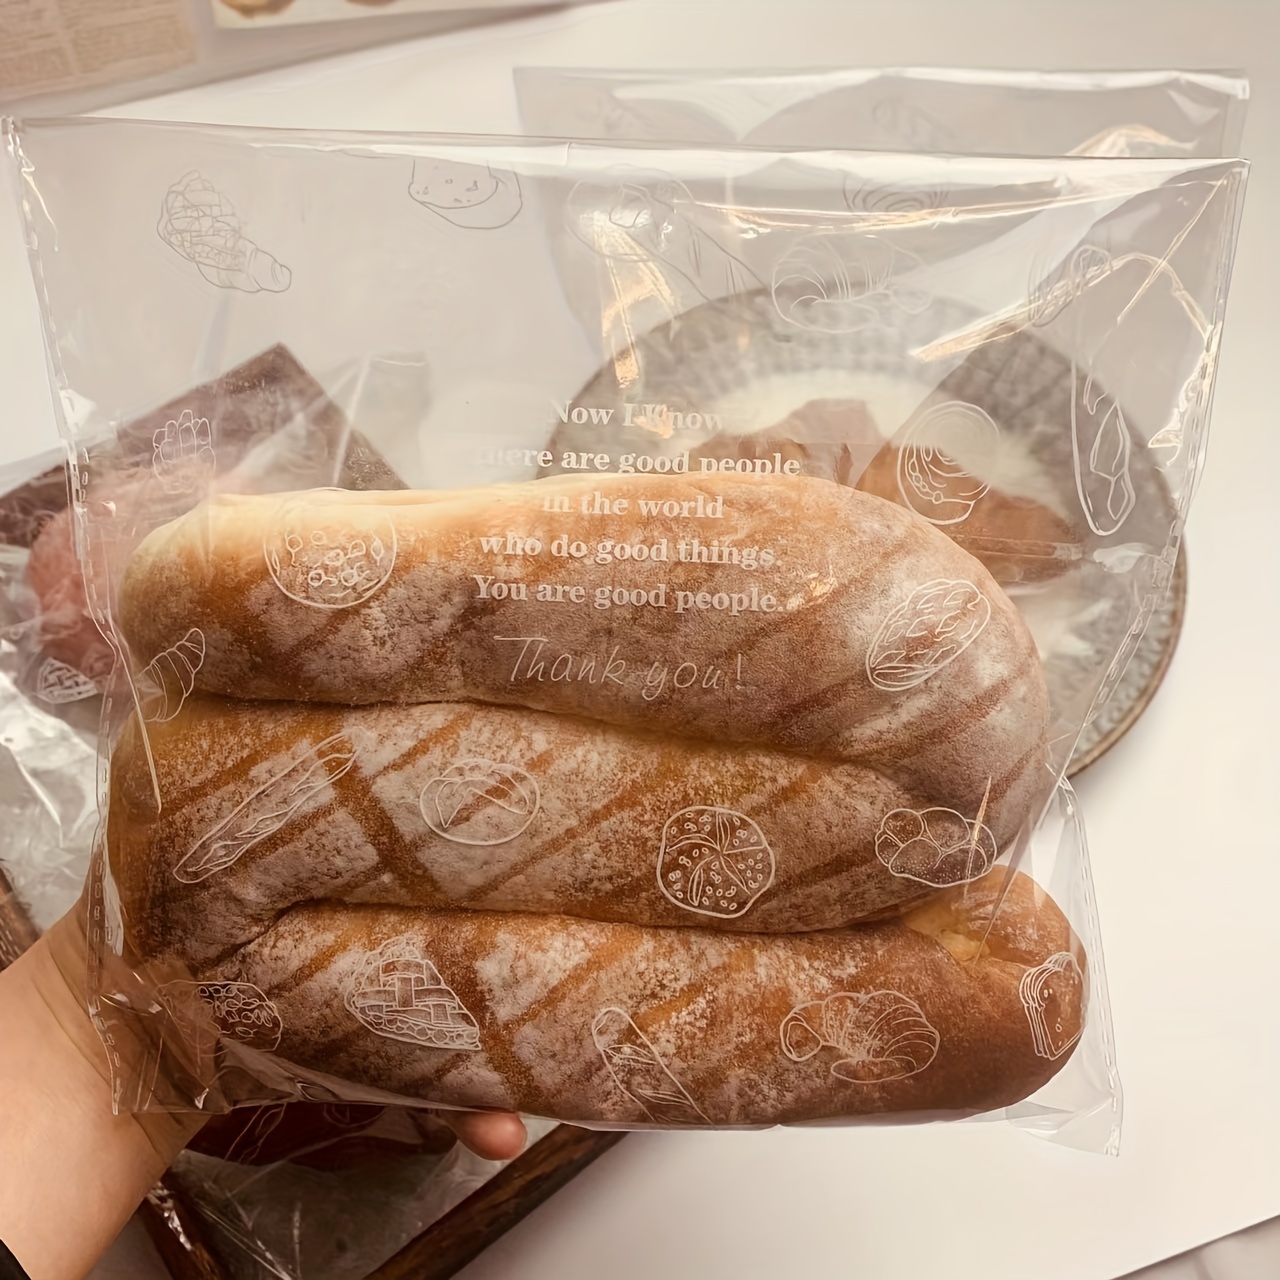 2 bolsas de pan para pan casero, forradas de plástico, bolsa de ahorro de  tela de lino reutilizable para masa madre y almacenamiento de pan casero,  17